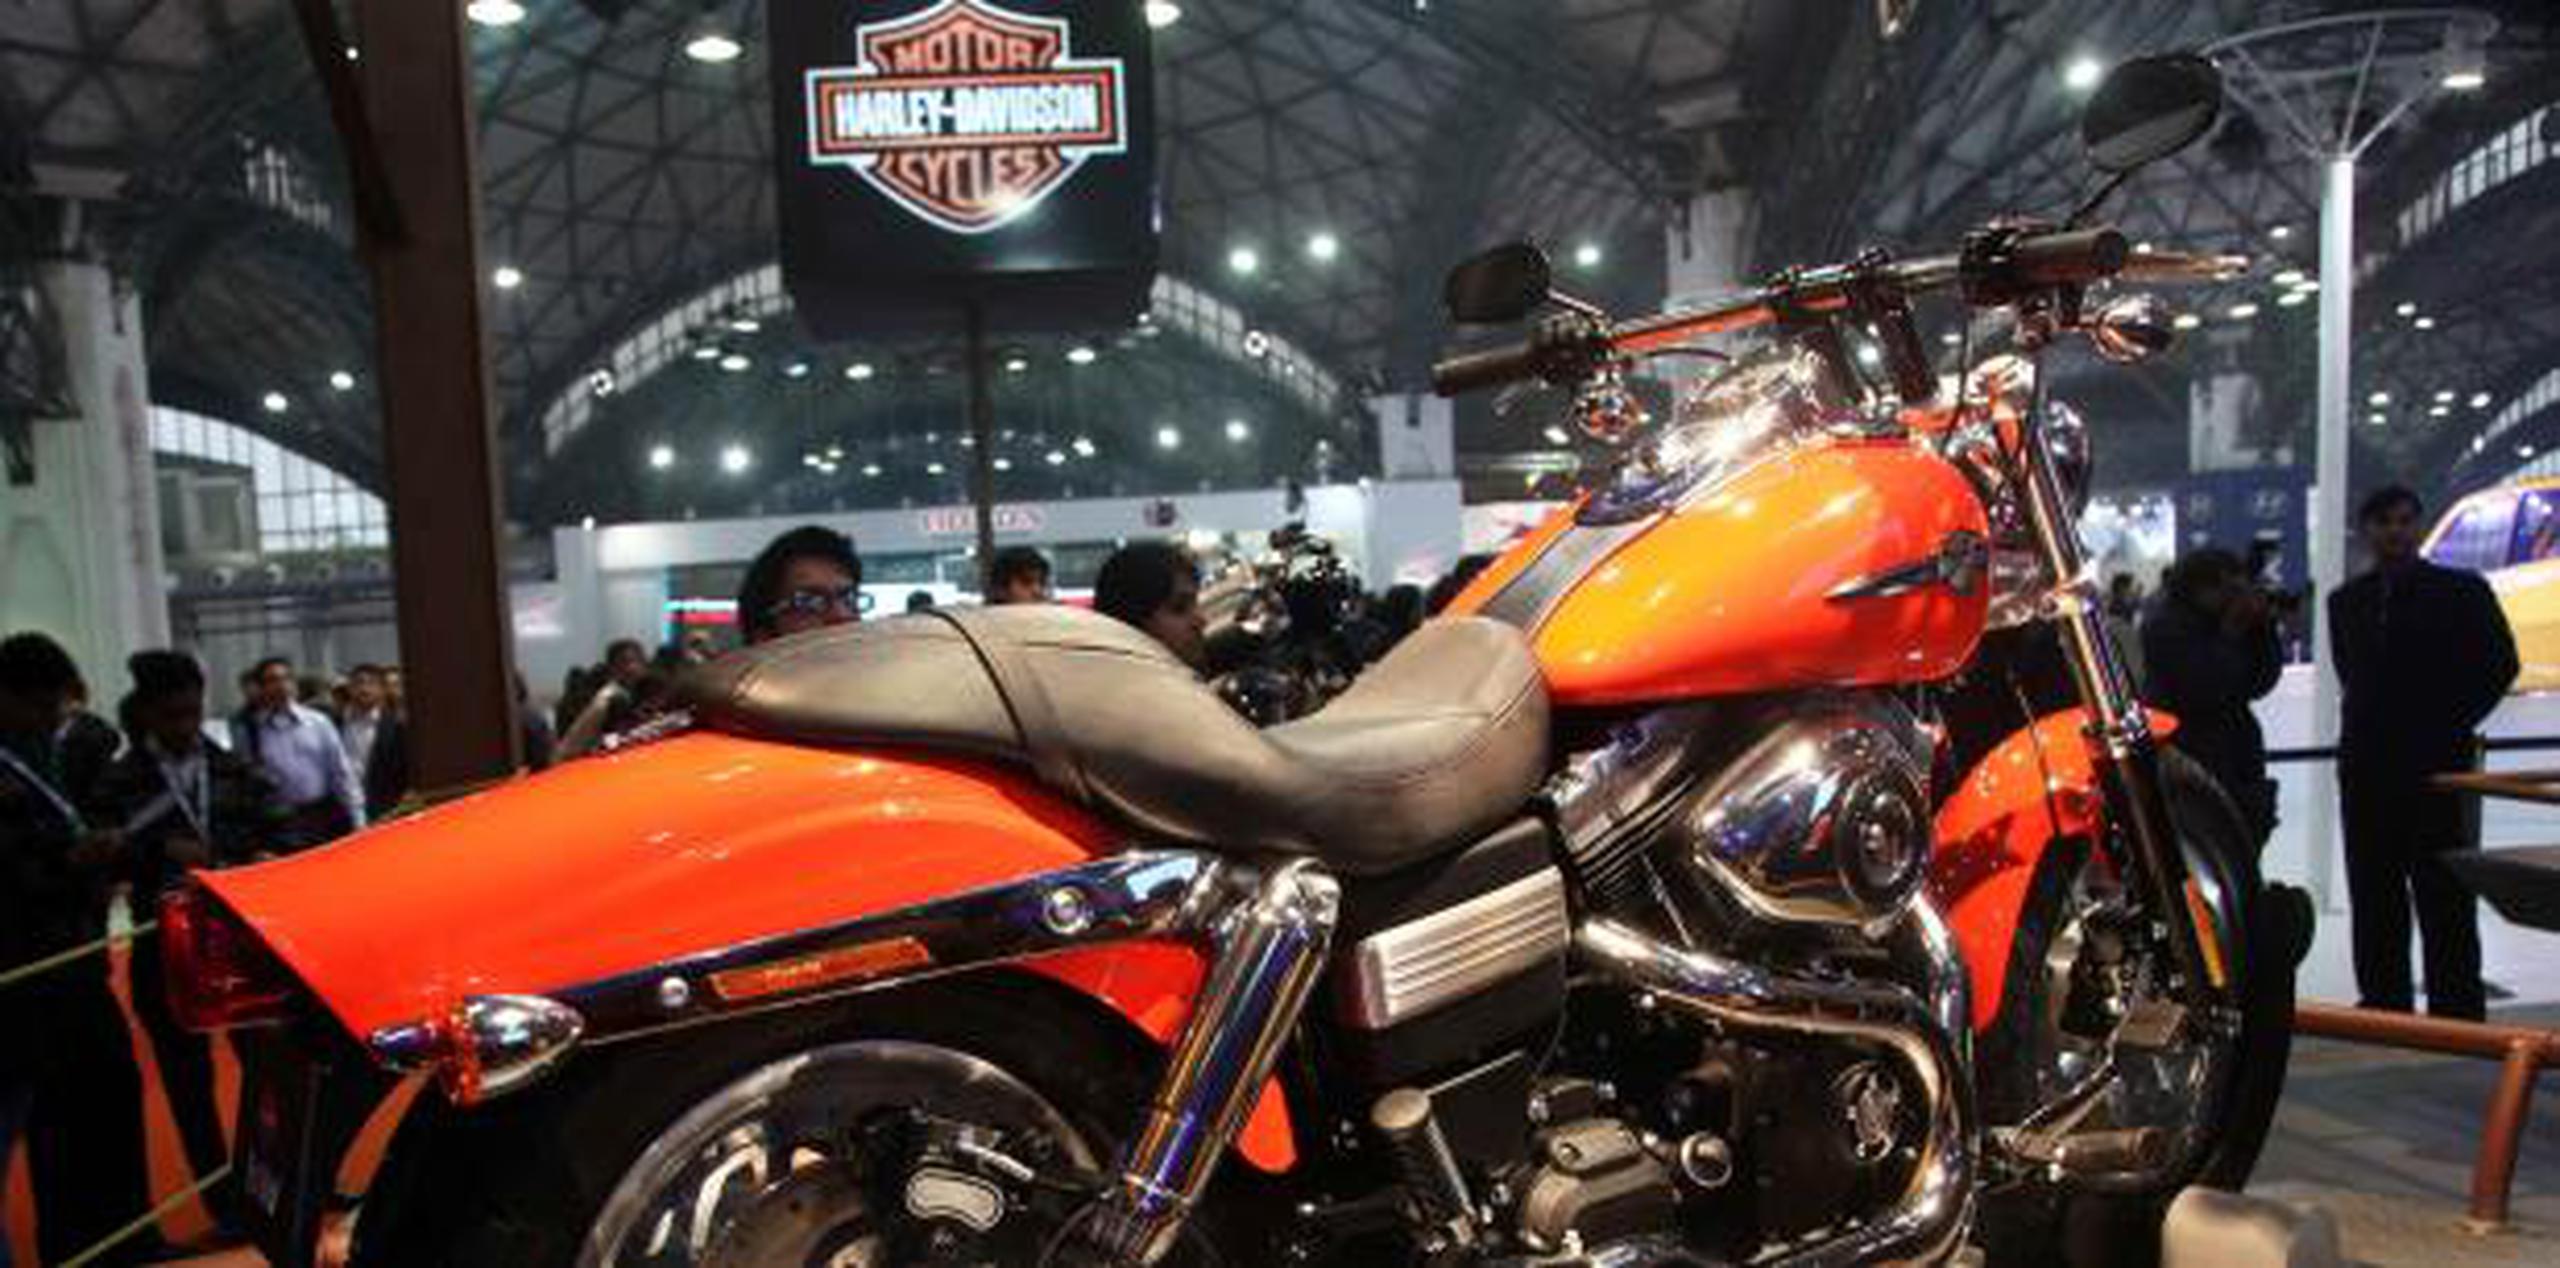 "Europa es un mercado crítico para Harley-Davidson", dijo la empresa. (AP)